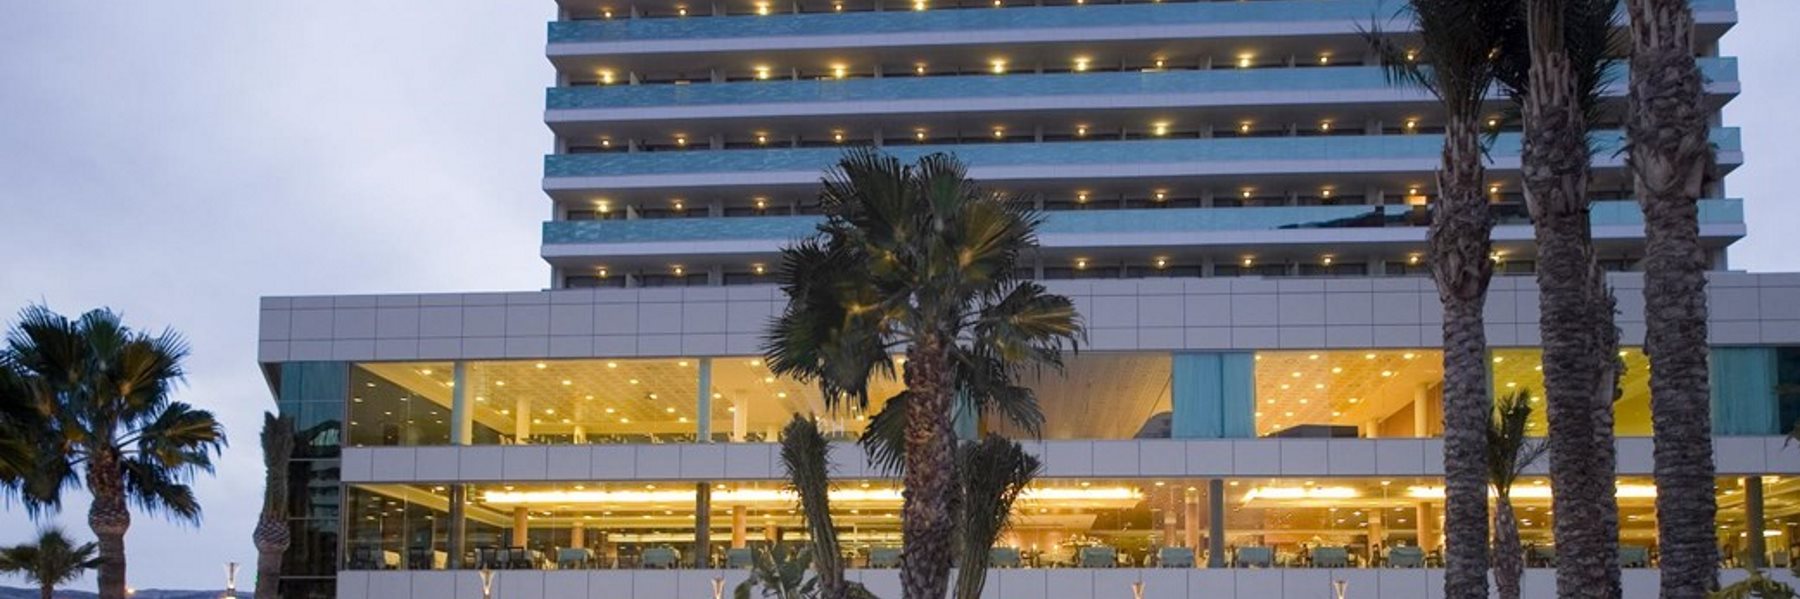 Oferta hotel Diamante Beach en Calpe para tus vacaciones en la Costa Blanca (Calpe - ALICANTE / ALACANT)